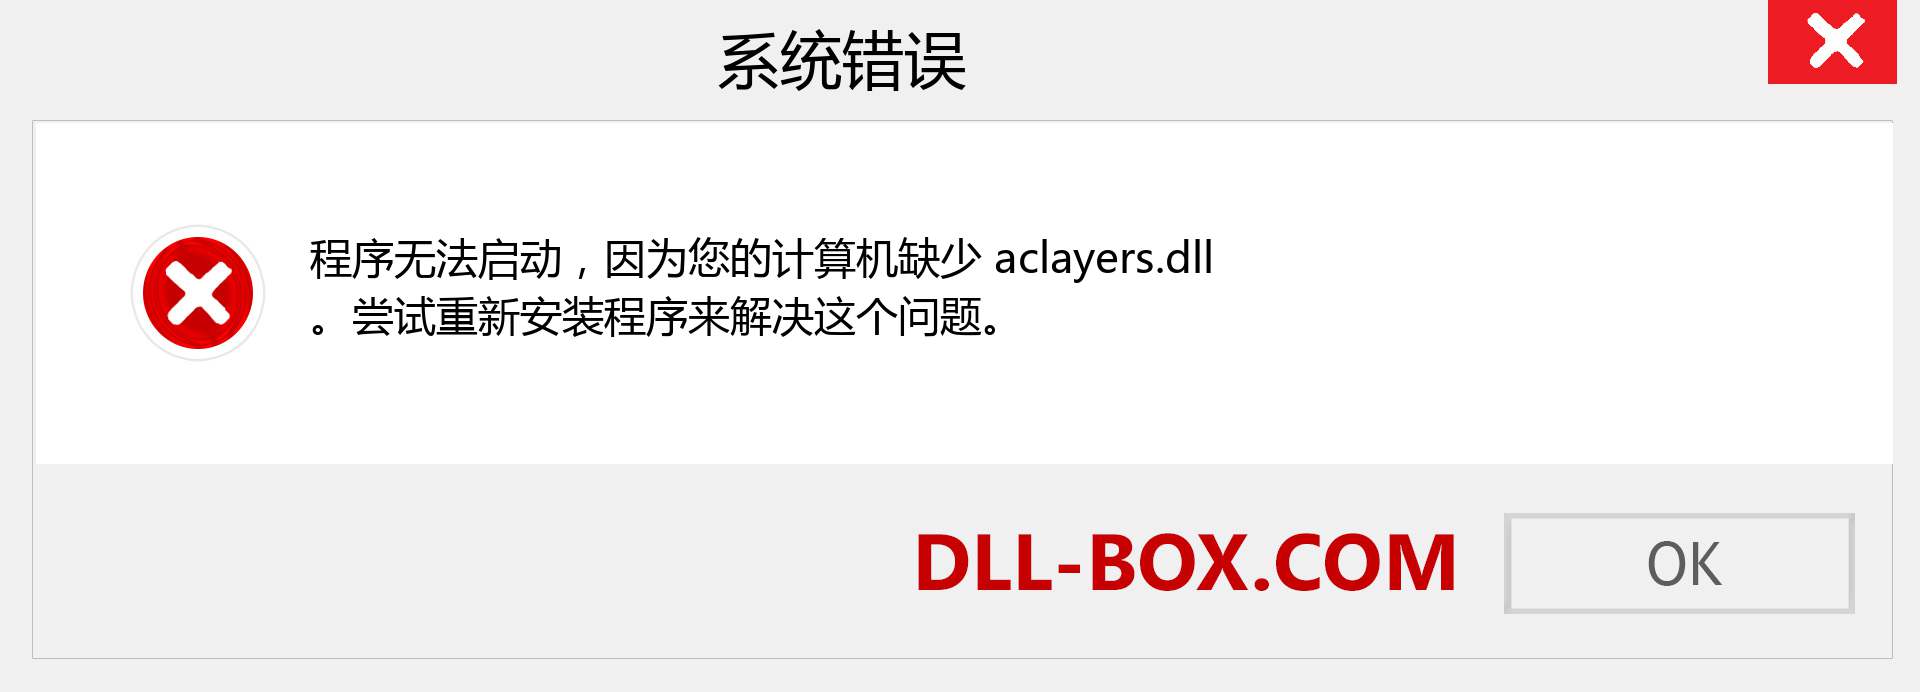 aclayers.dll 文件丢失？。 适用于 Windows 7、8、10 的下载 - 修复 Windows、照片、图像上的 aclayers dll 丢失错误